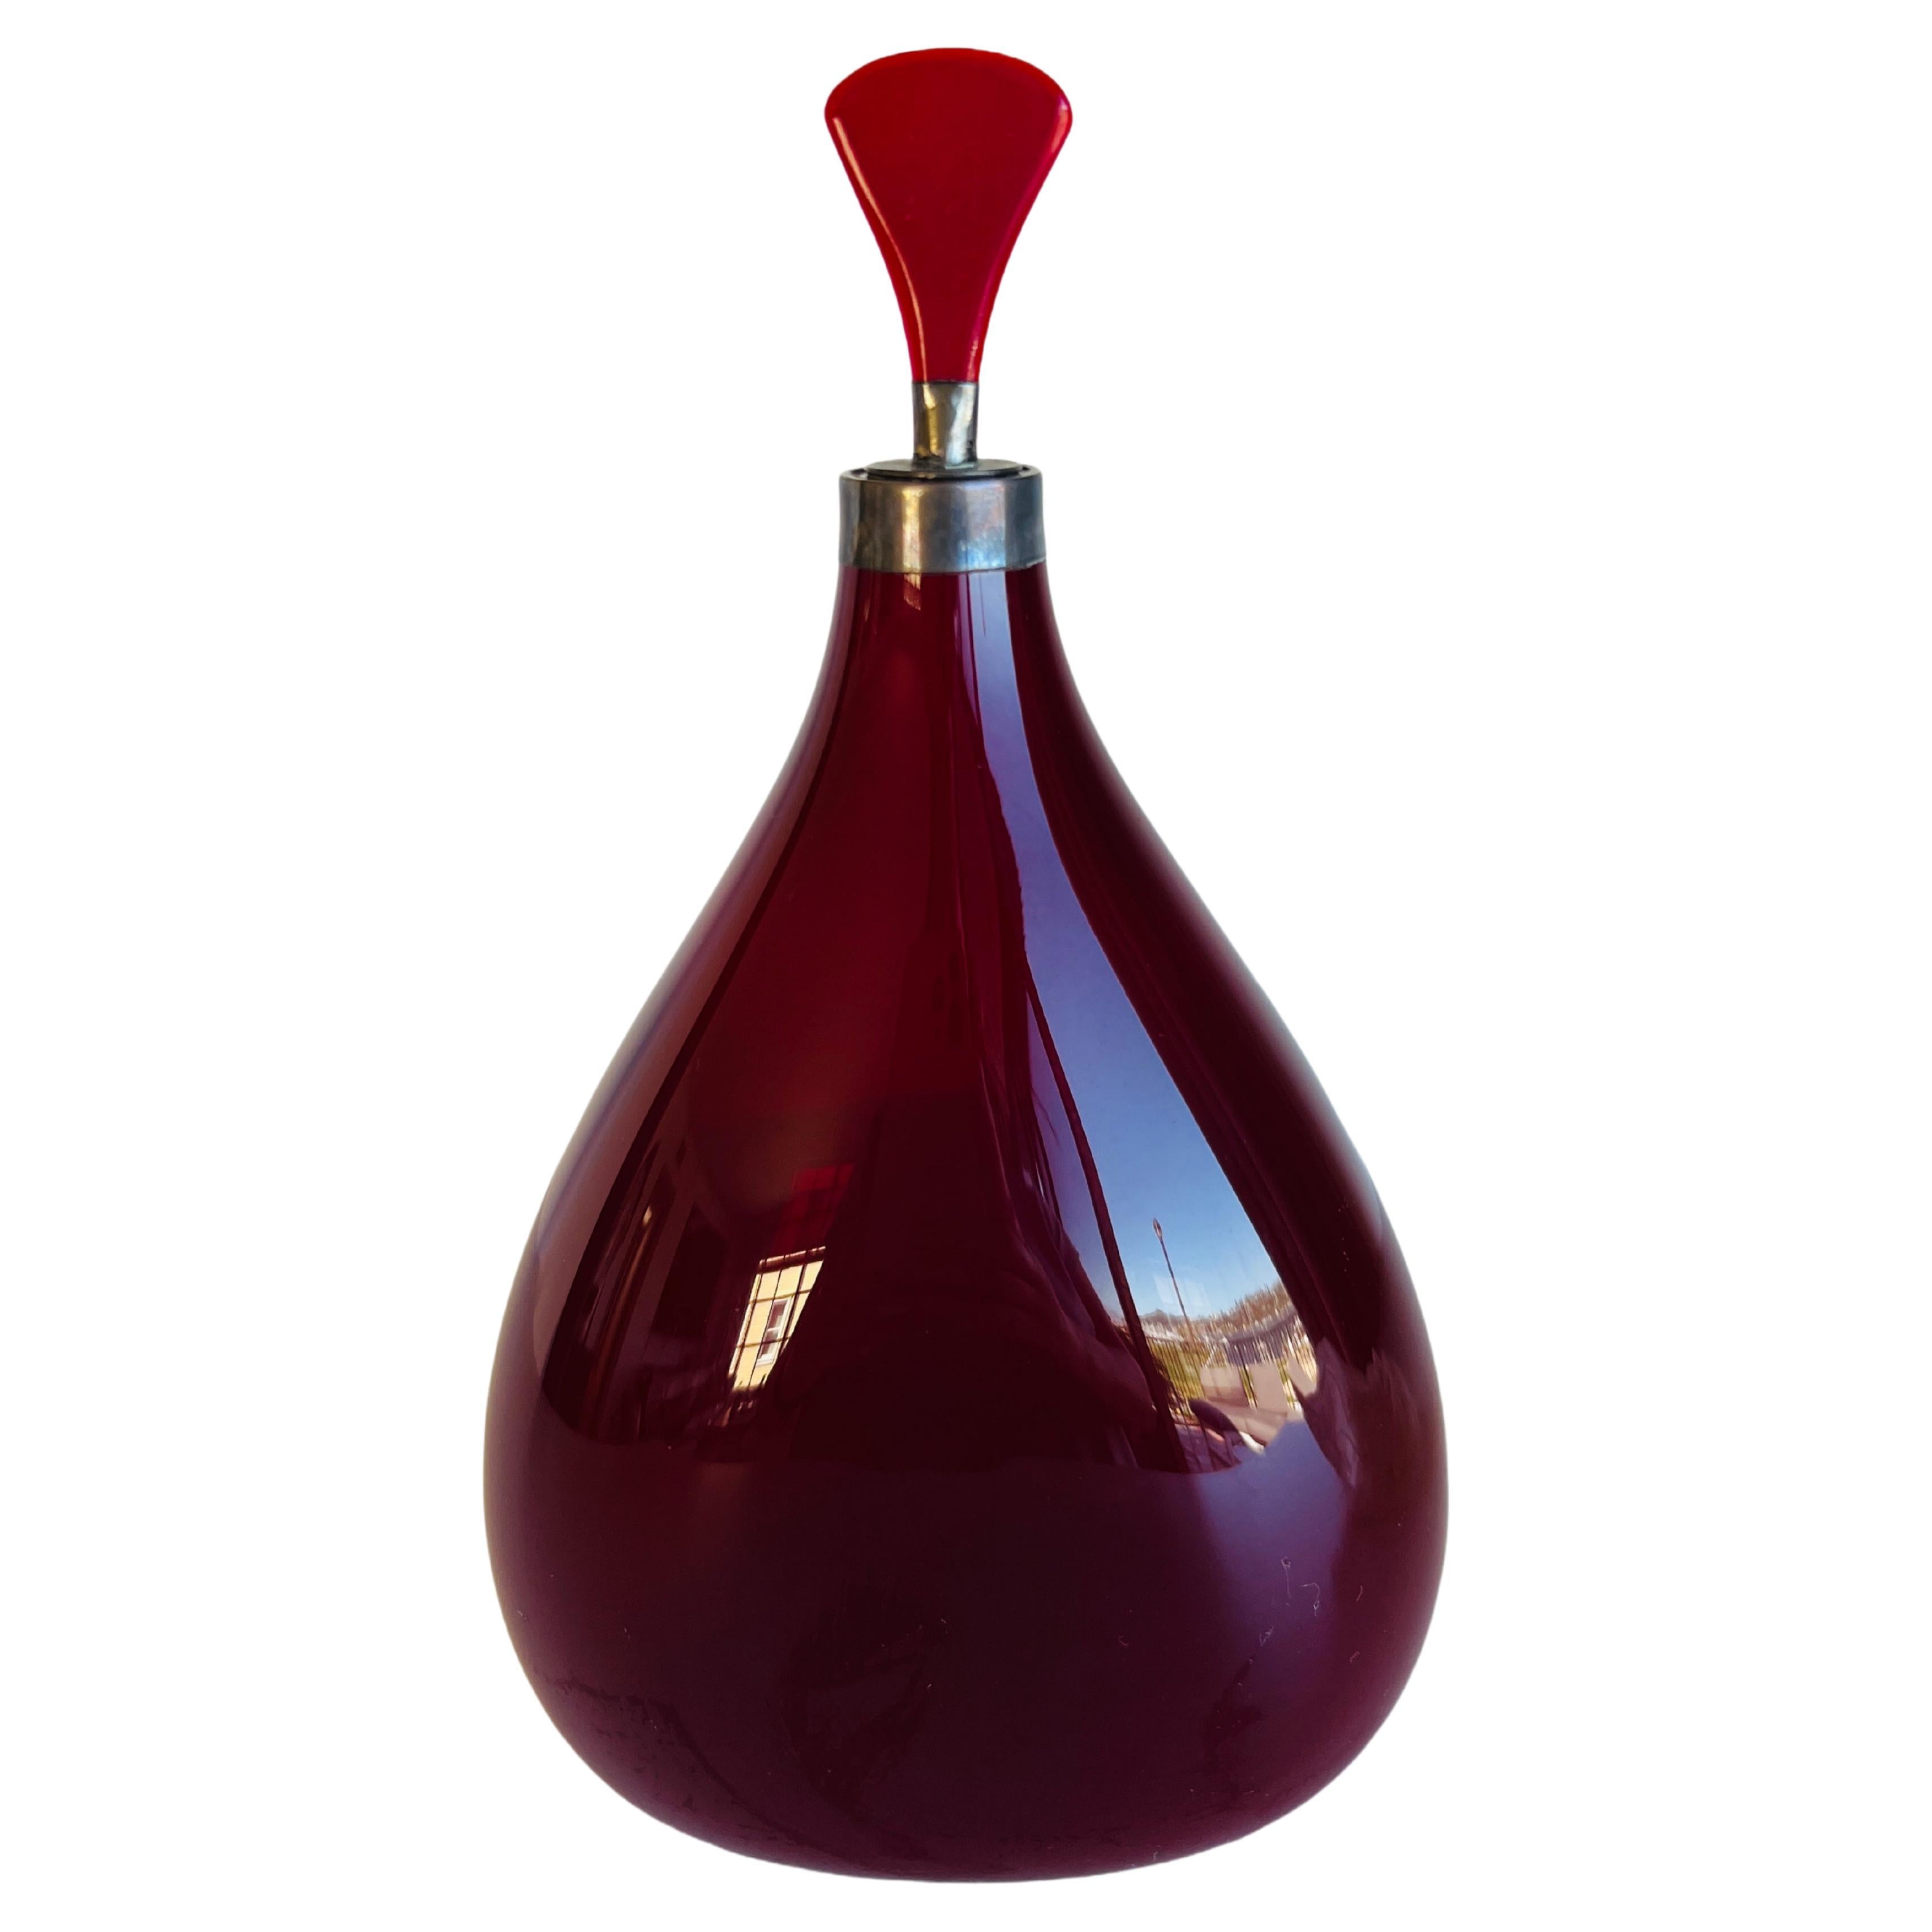 Grand flacon de parfum Cologne en verre soufflé argenté opaque rouge rubis ancien